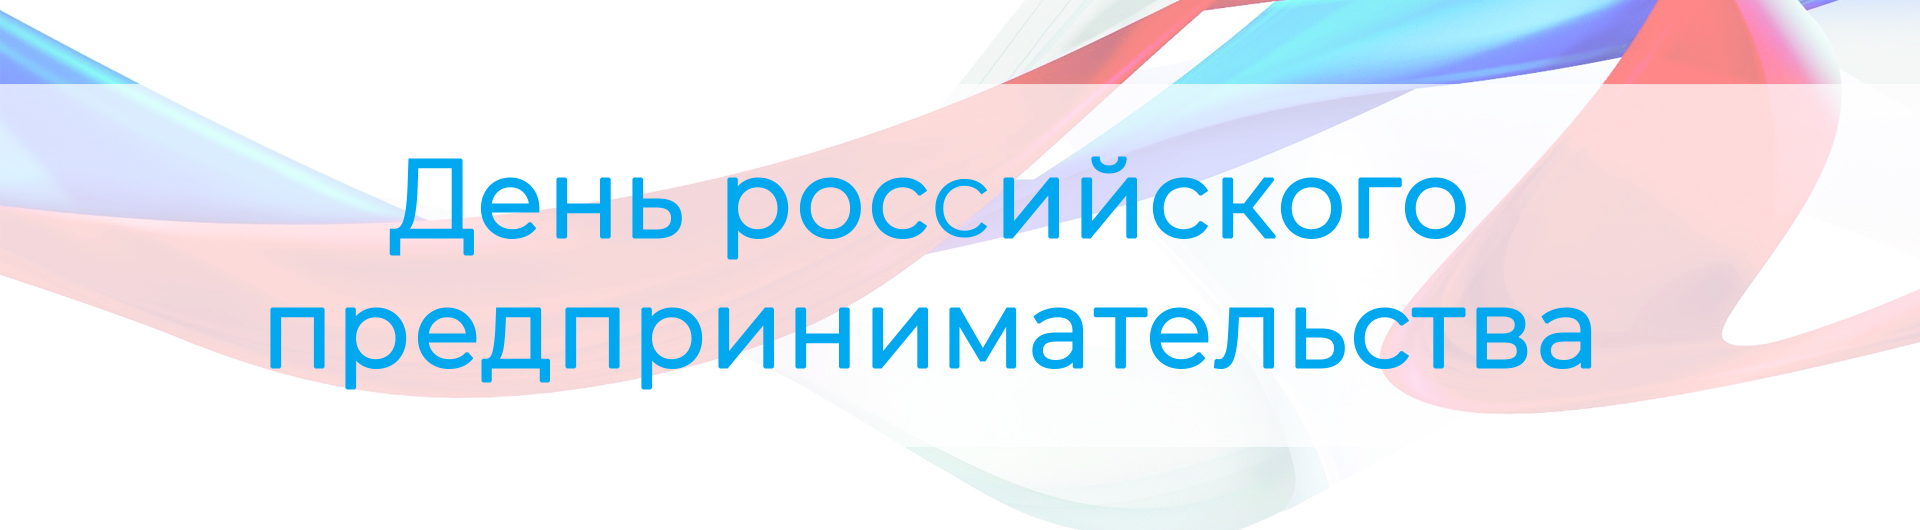 Коллеги, поздравляем с Днем российского предпринимательства! 